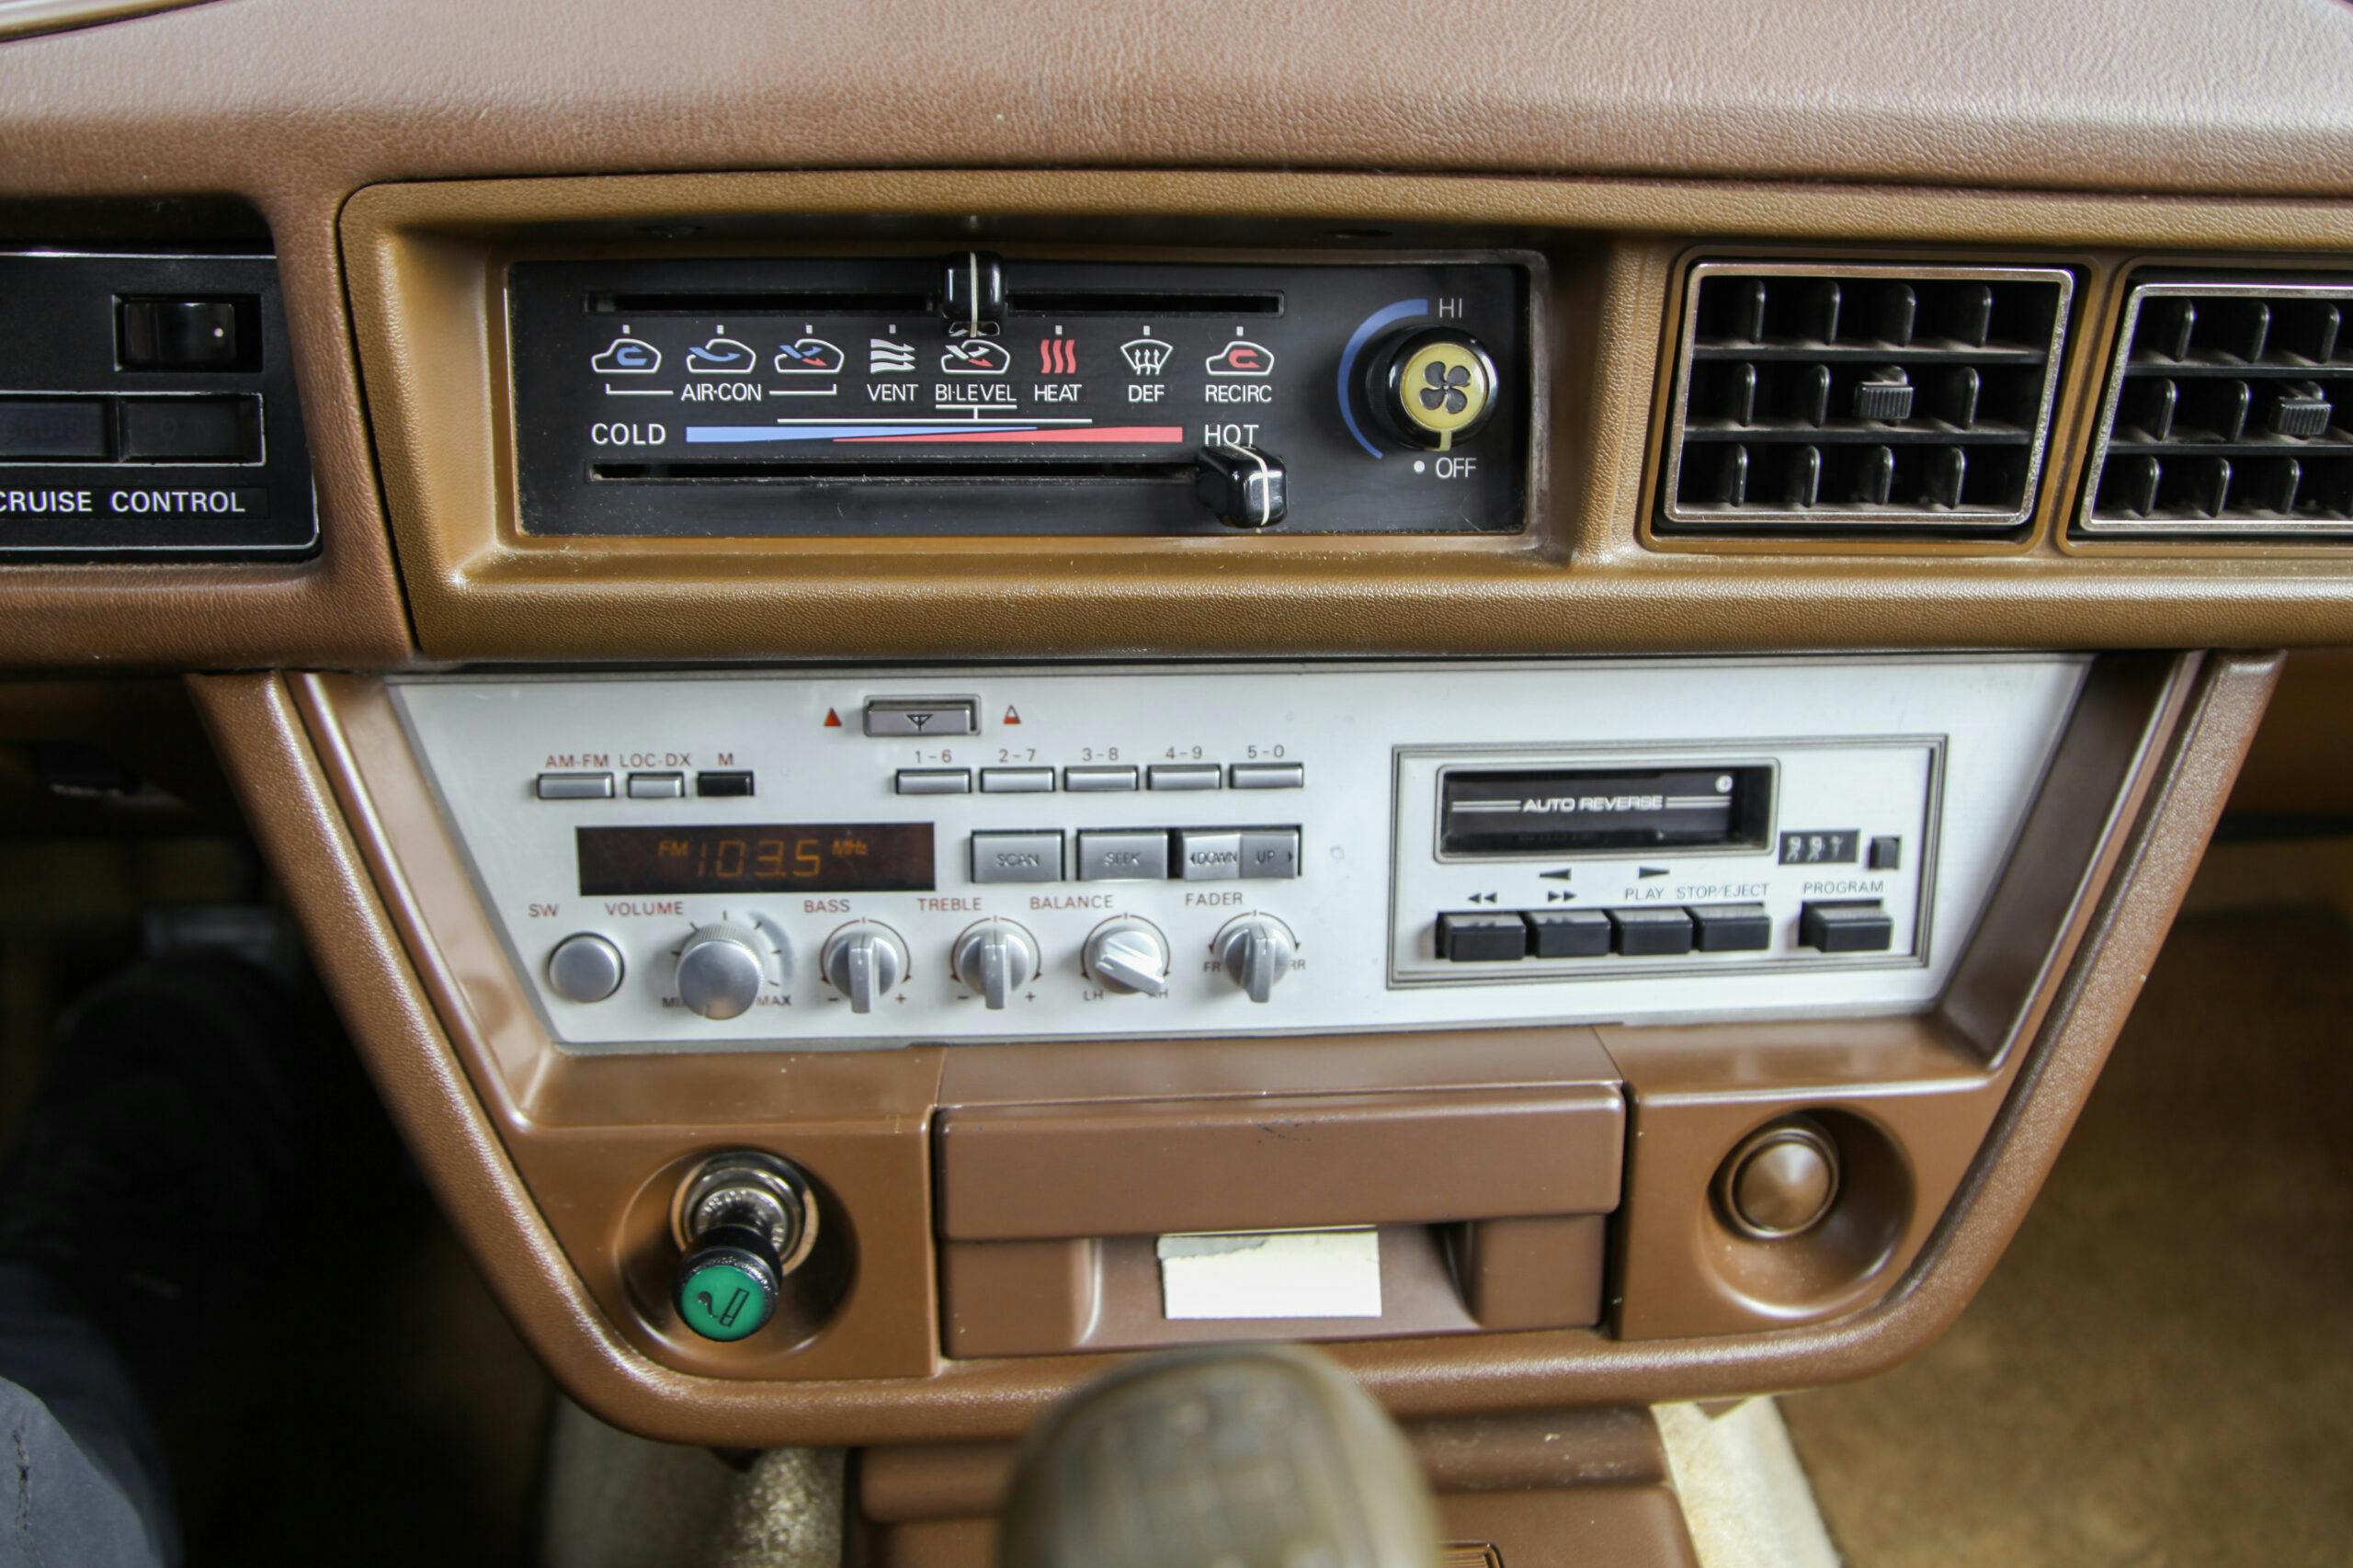 1981 Datsun 280ZX interior radio climate controls